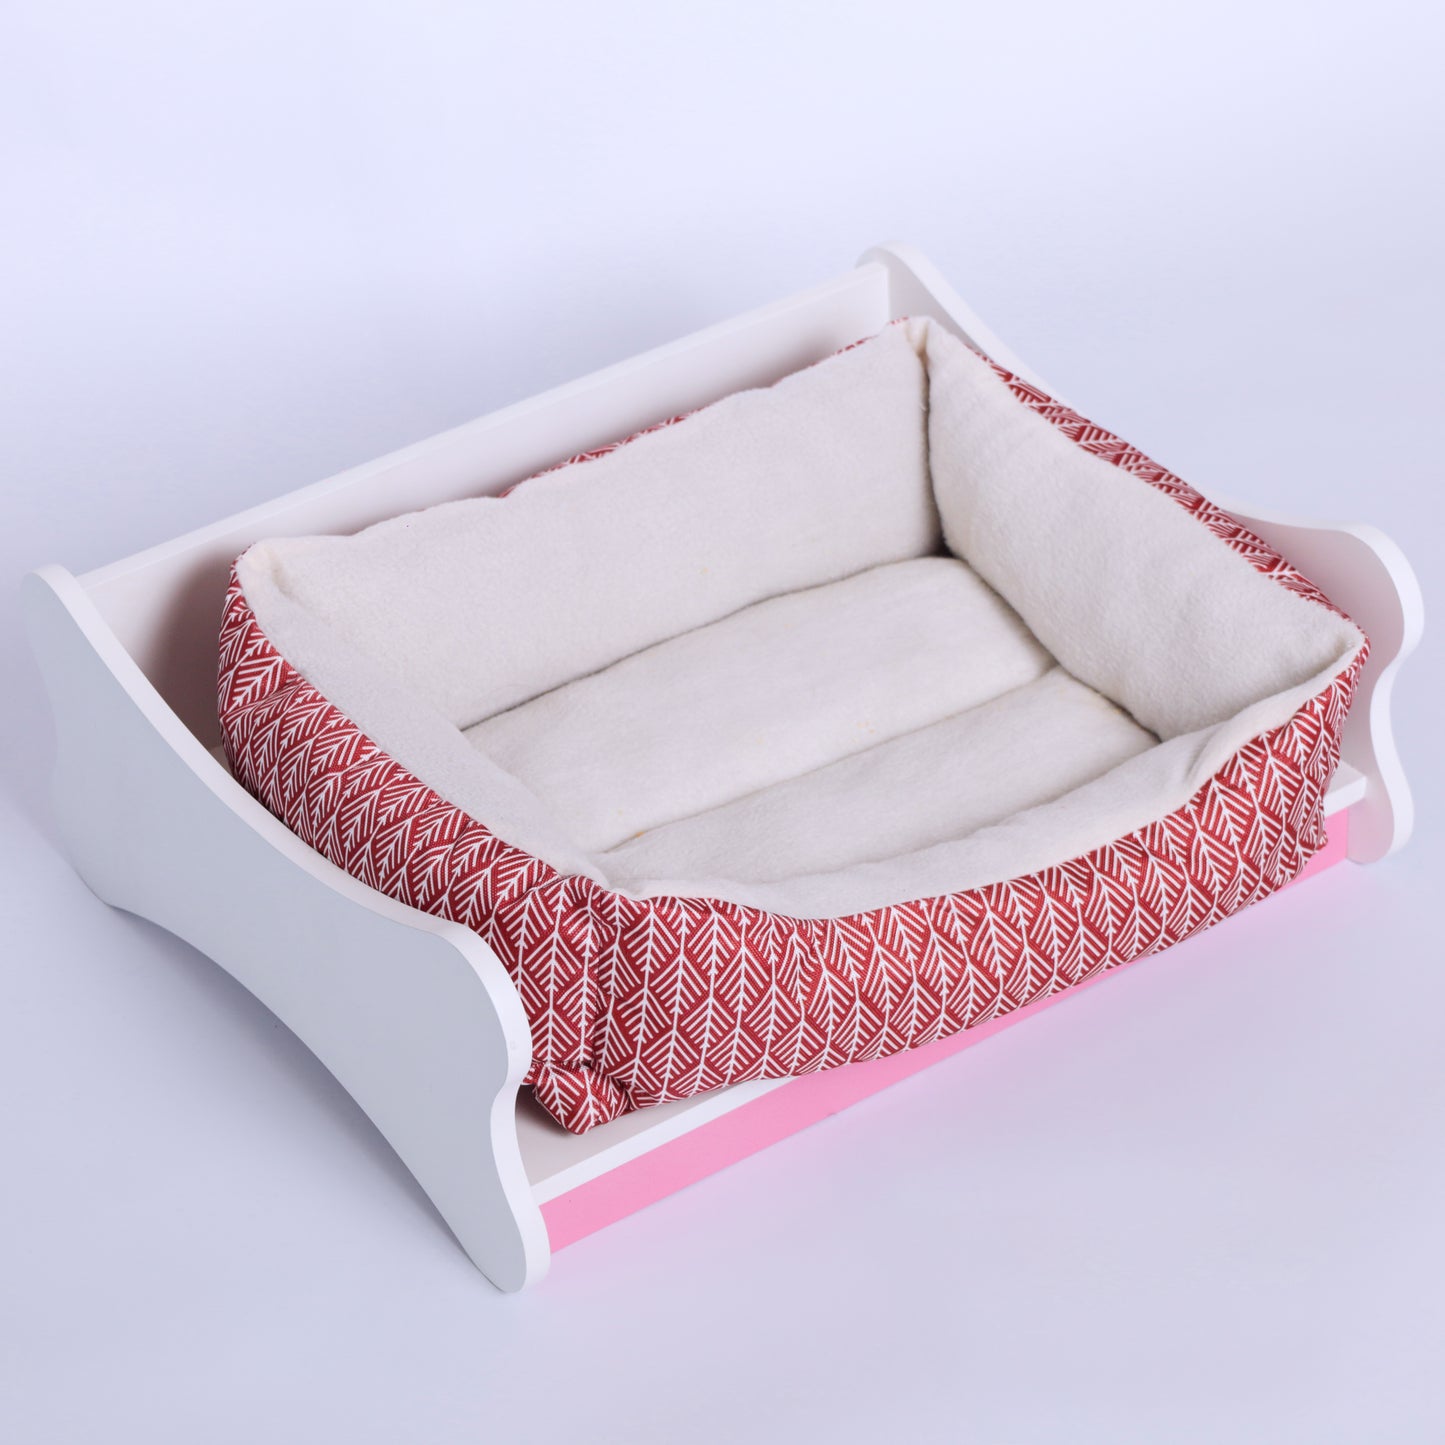 Craft Bed - Wooden Bed Frame